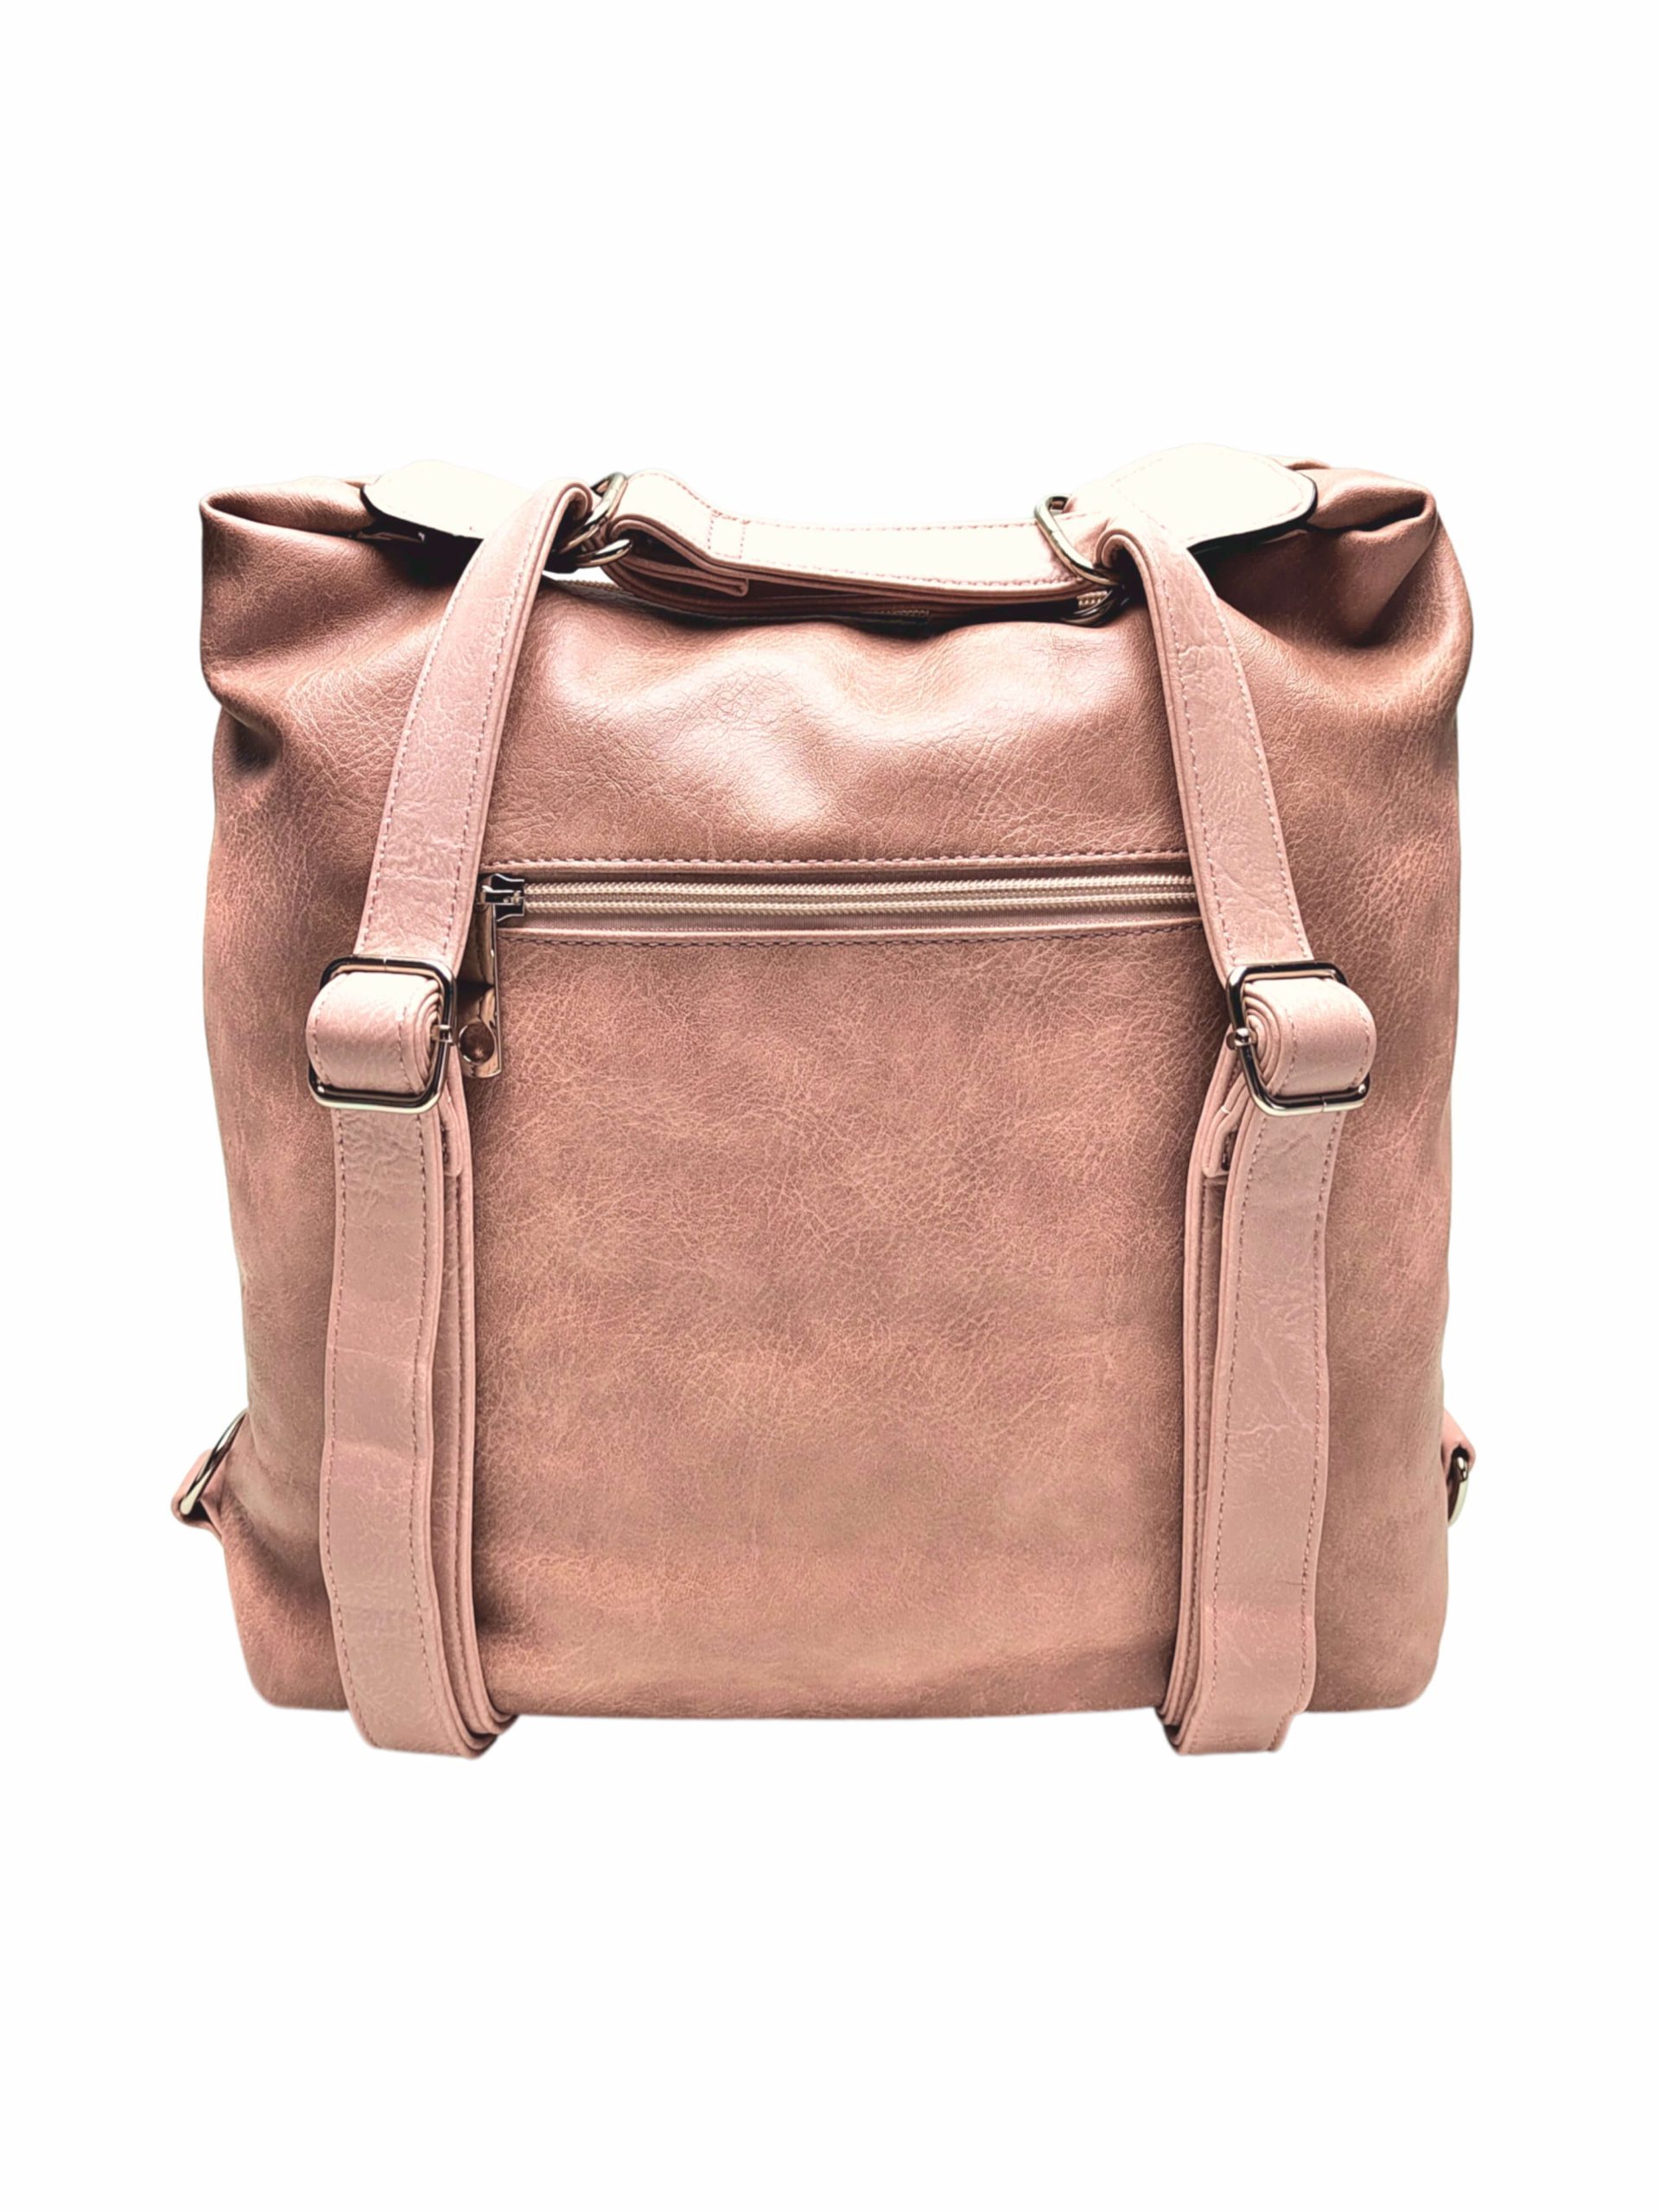 Moderní starorůžový kabelko-batoh z eko kůže, Tapple, H190010, zadní strana kabelko-batohu 2v1 s popruhy